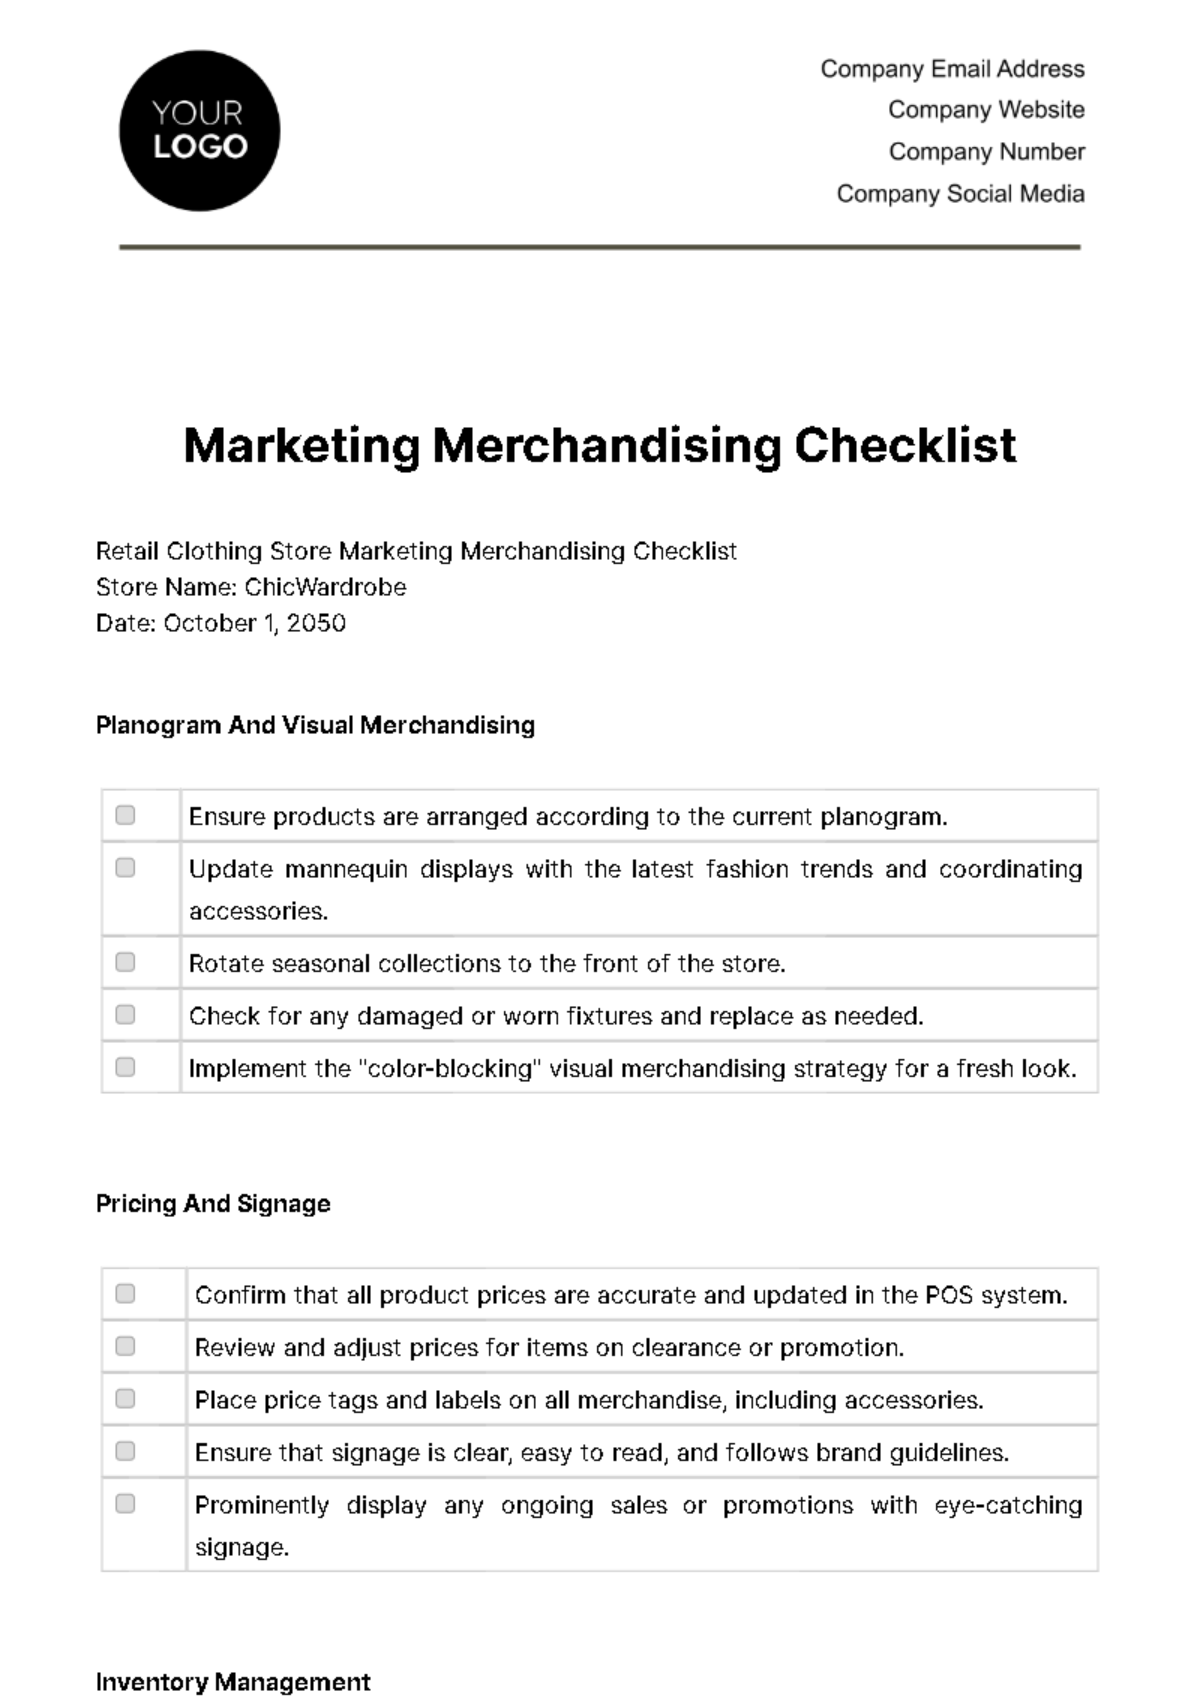 Free Marketing Merchandising Checklist Template